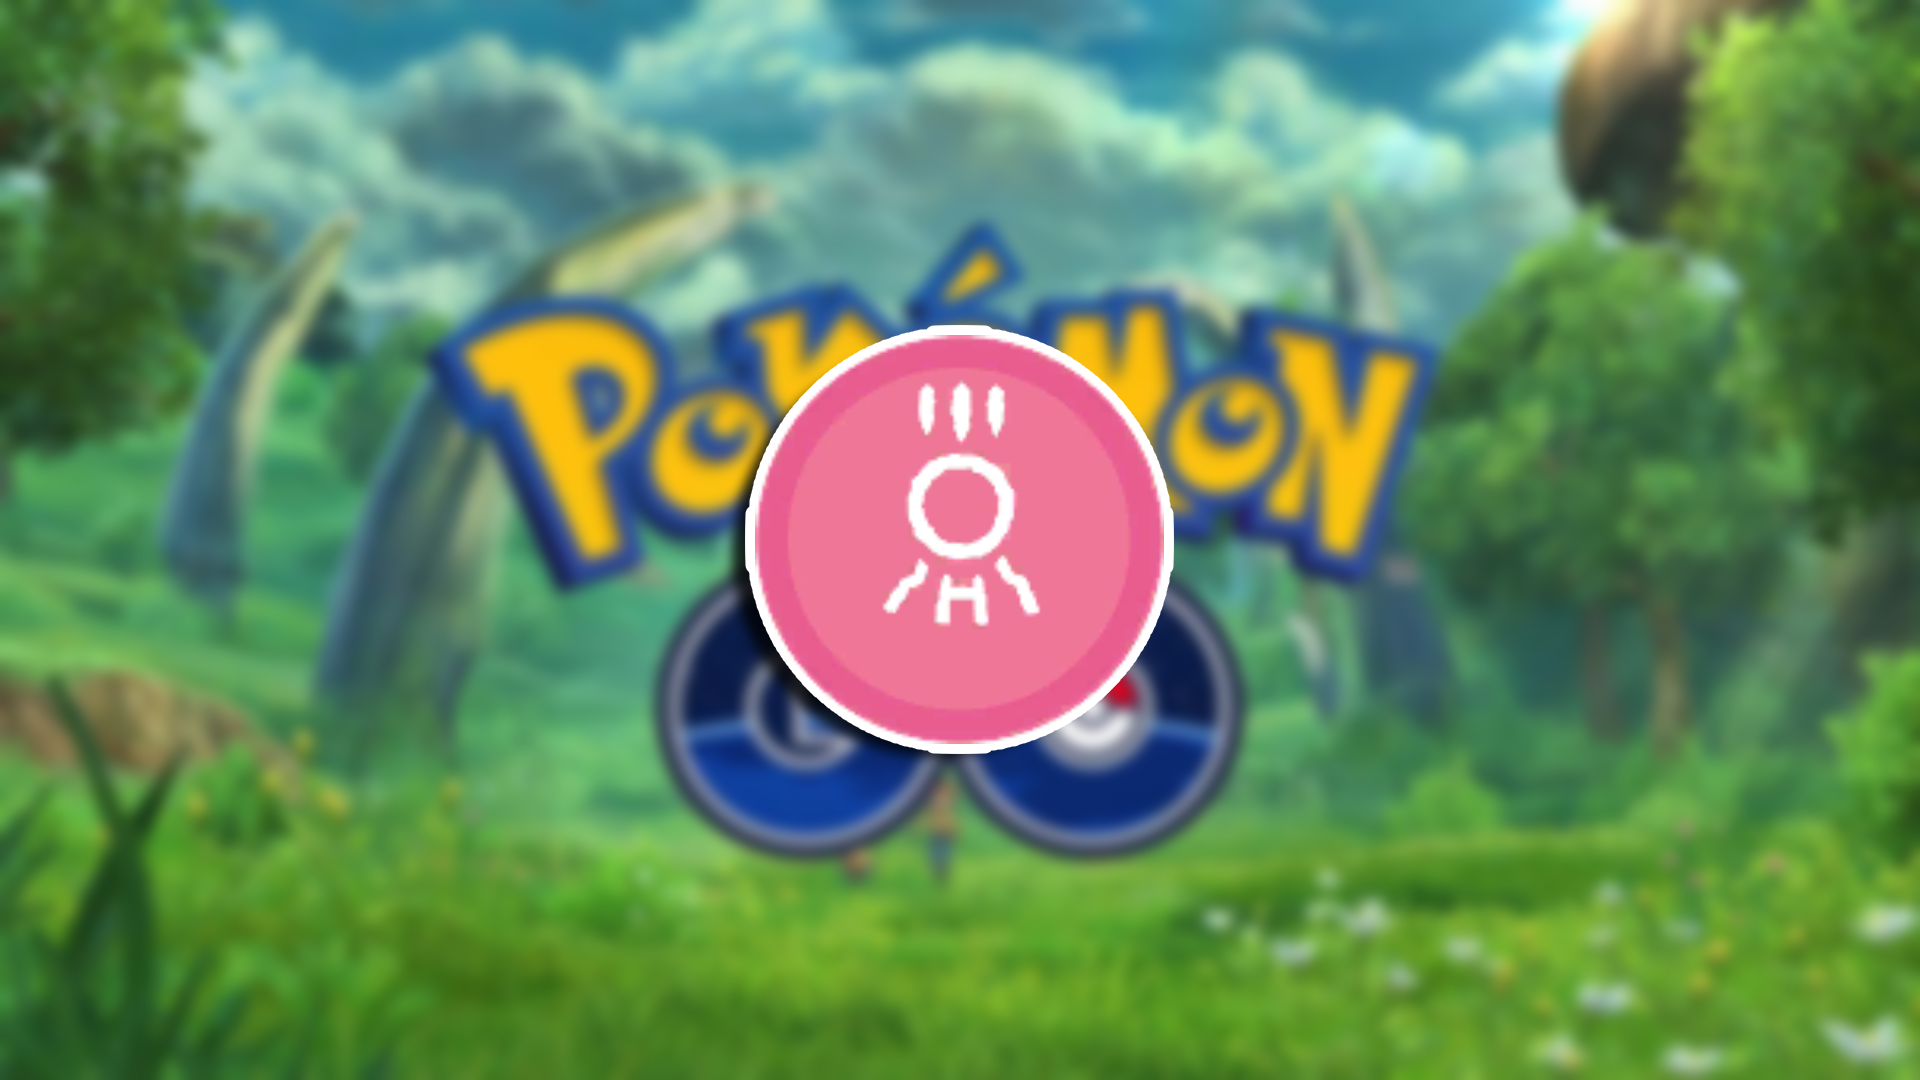 primal energy banner pokemon go